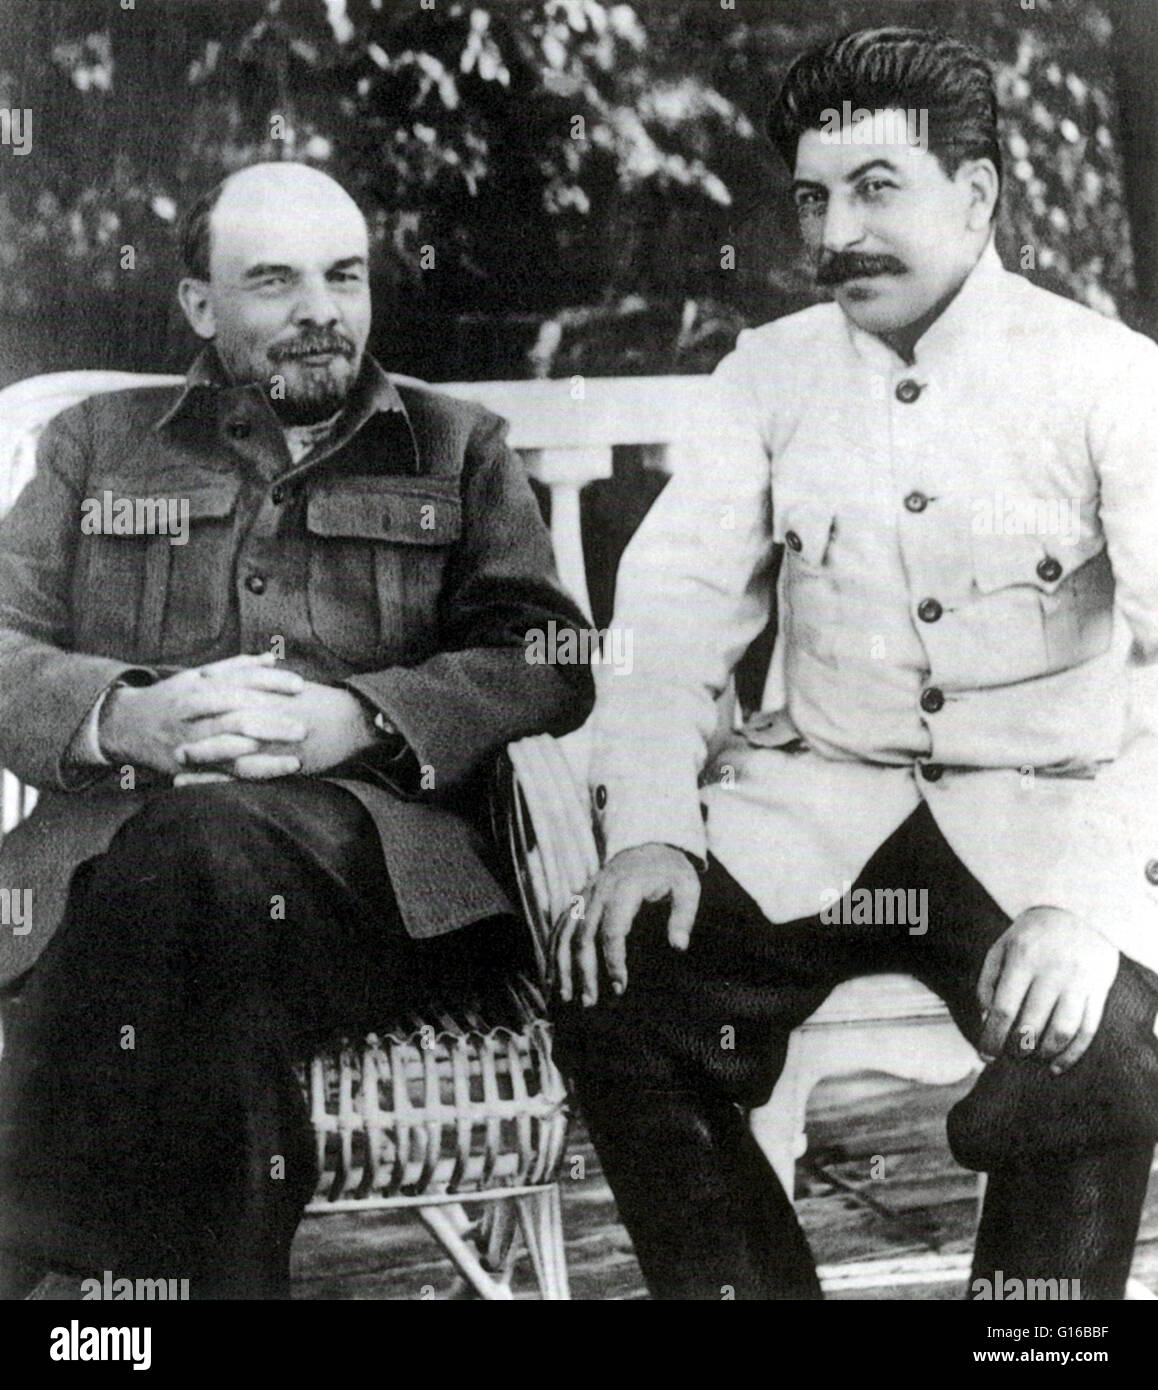 Vladimir Lenin (links) und Josef Stalin (rechts) in Gorki, 1922. Lenin erlitt einen Schlaganfall im Jahre 1922, zwingt ihn in Altersteilzeit in Gorki. Stalin besuchte ihn oft, wie seine Vermittler mit der Außenwelt, aber das Paar stritt sich handelt und ihre relatio Stockfoto